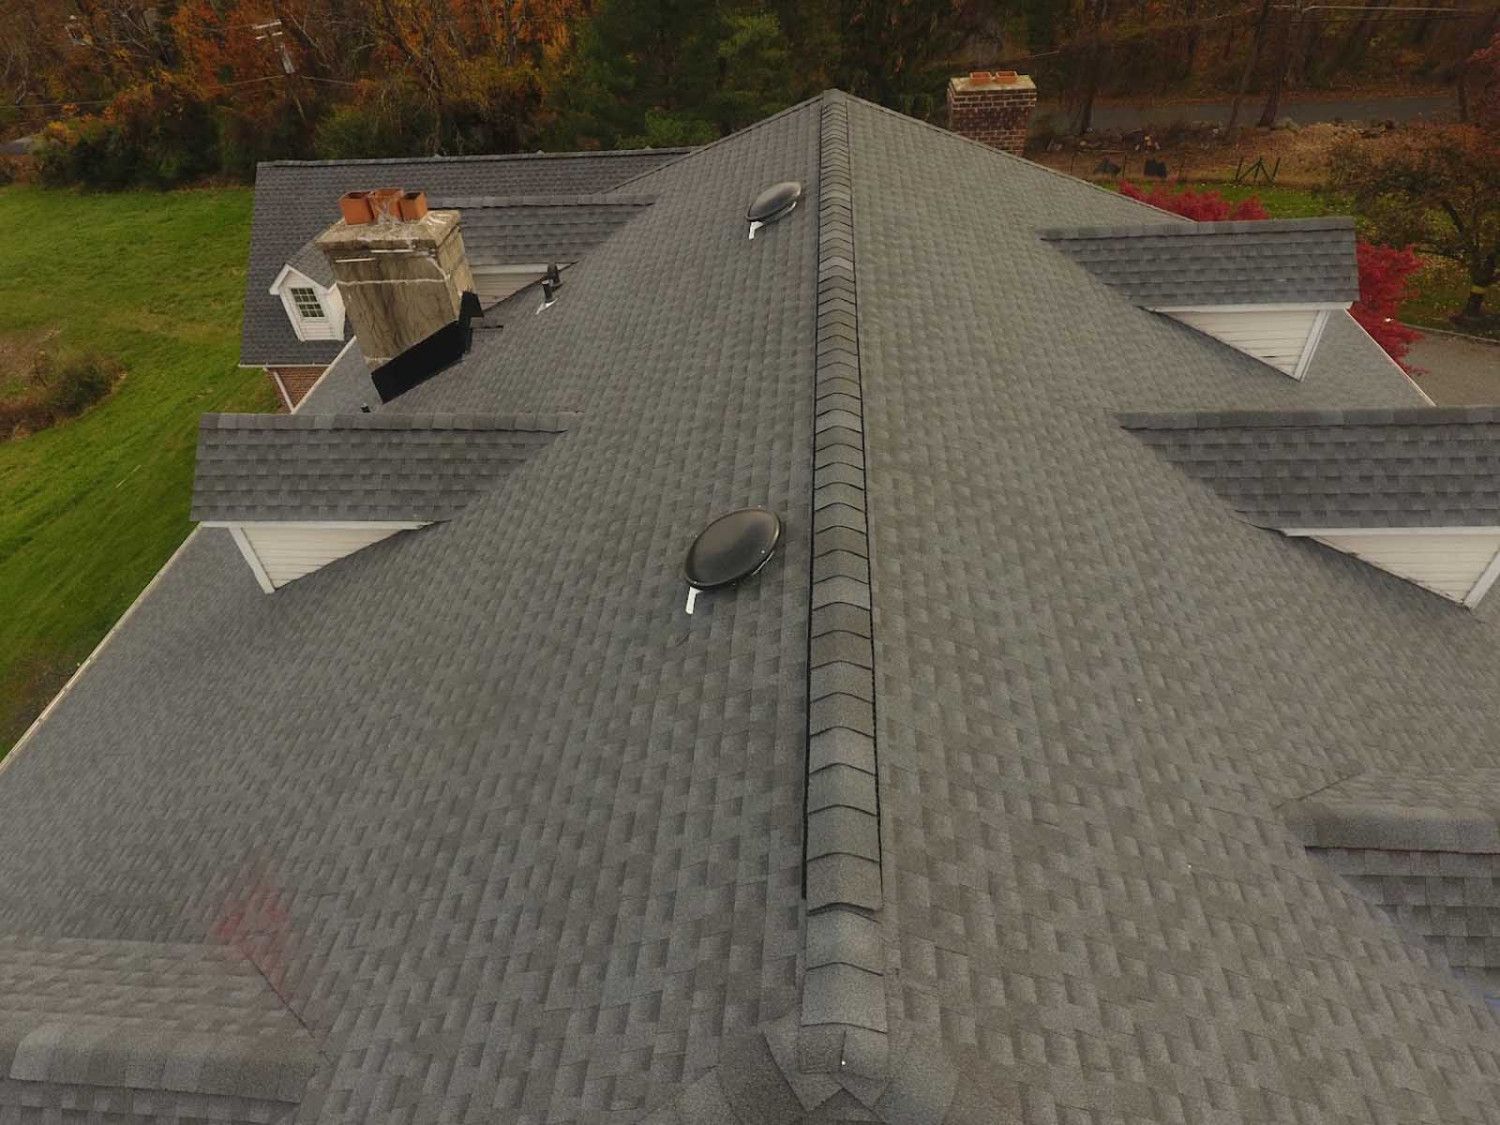 Roof repair services in Hillsborough, NJ.